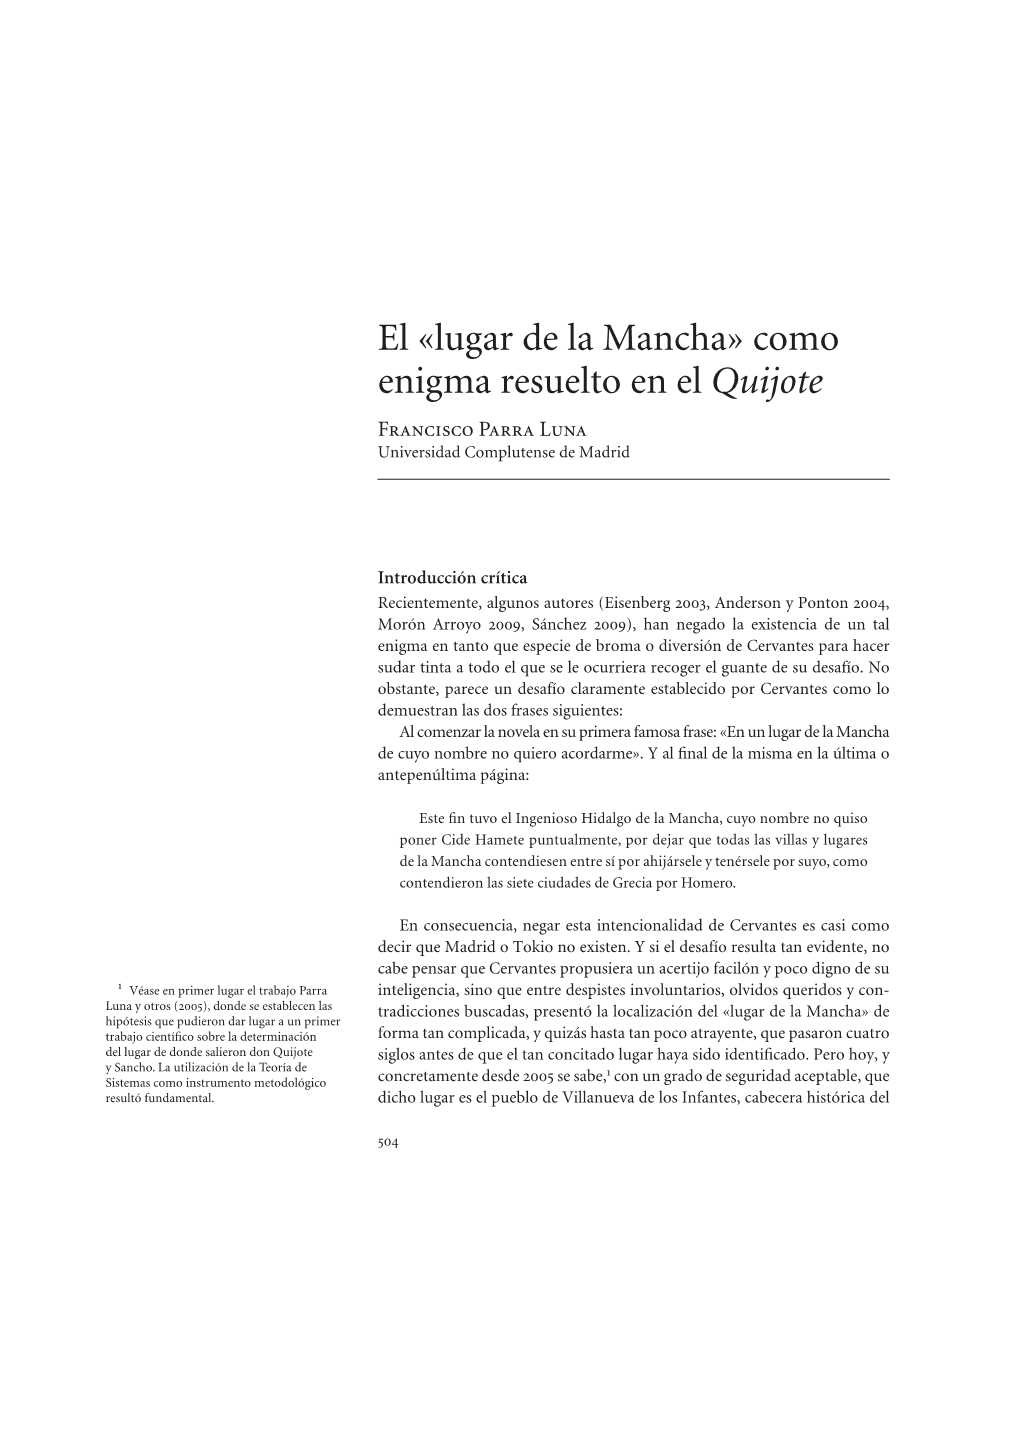 Como Enigma Resuelto En El Quijote Francisco Parra Luna Universidad Complutense De Madrid